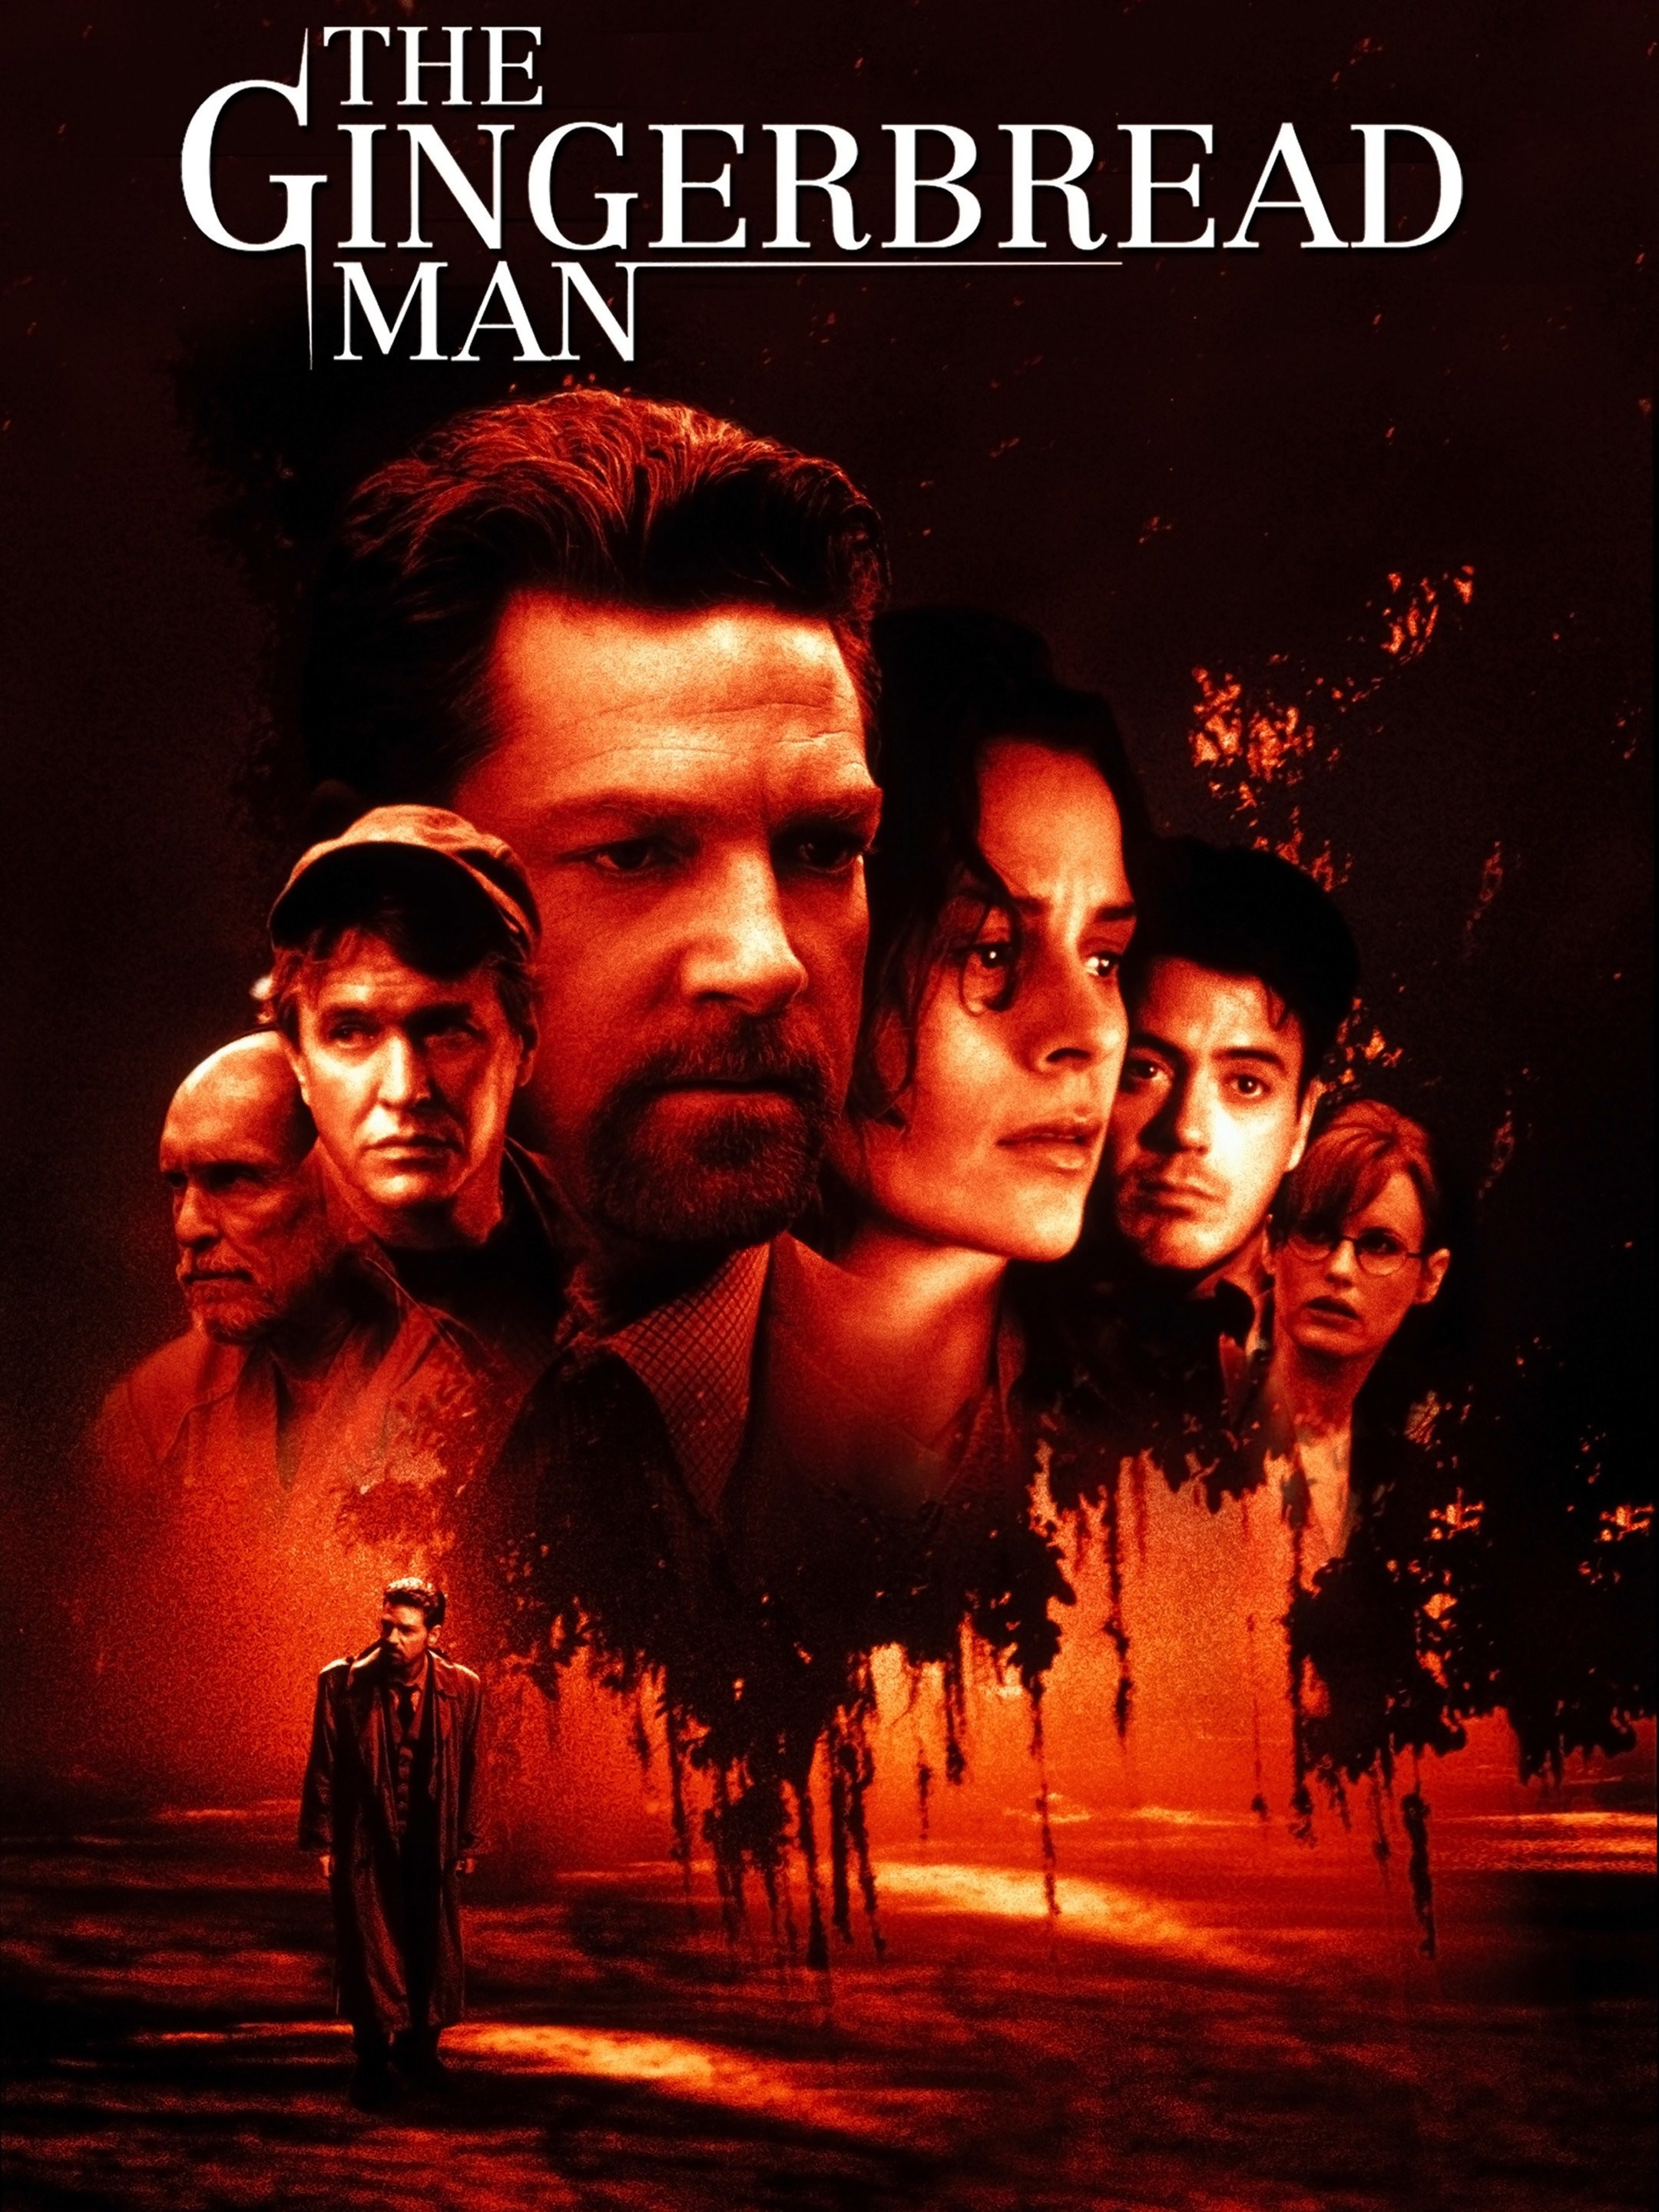 Stick Man - Rotten Tomatoes